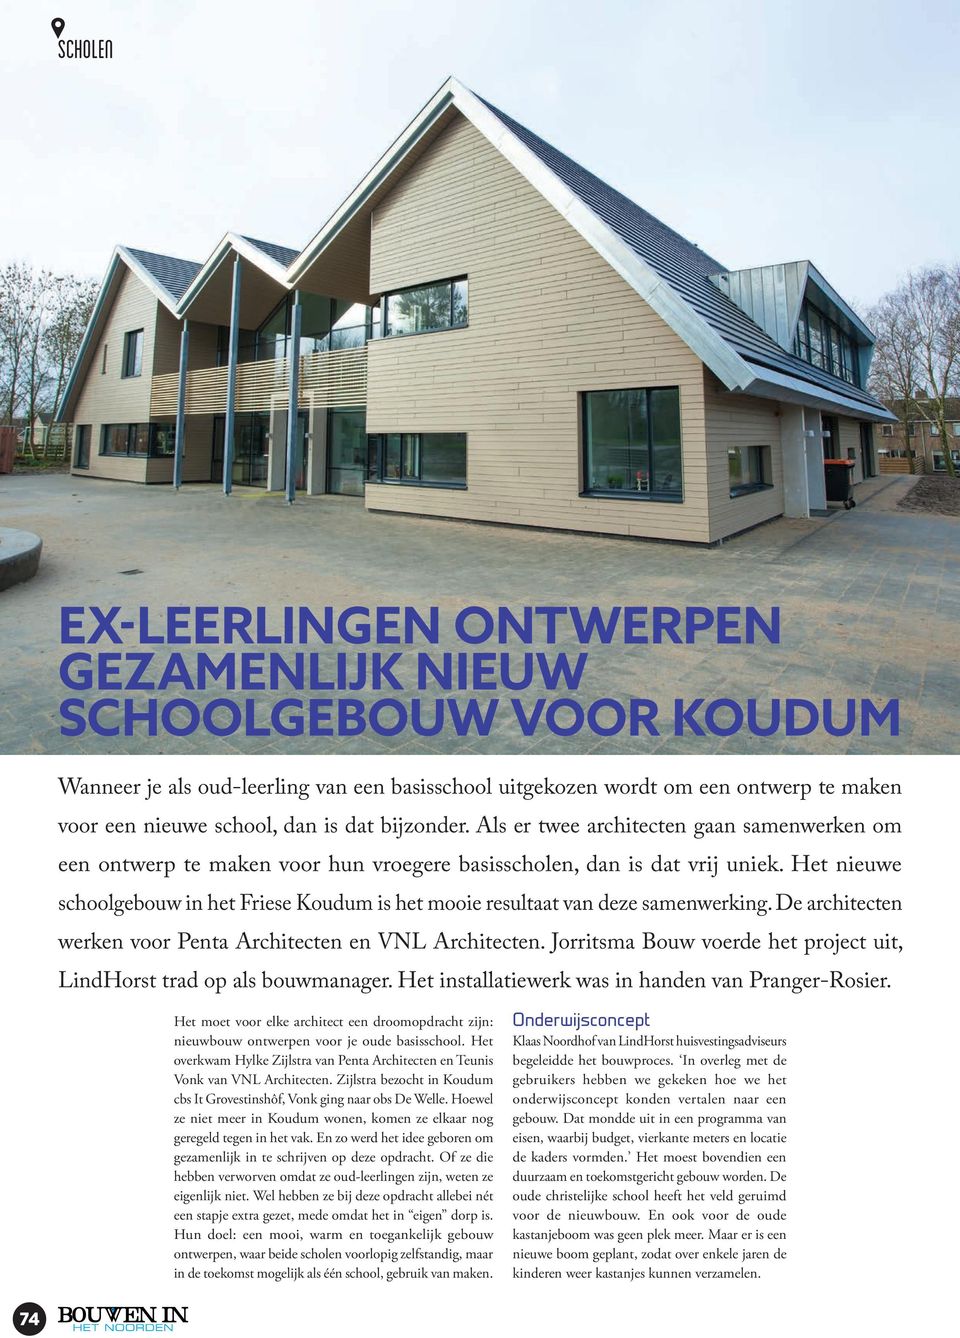 Het nieuwe schoolgebouw in het Friese Koudum is het mooie resultaat van deze samenwerking. De architecten werken voor Penta Architecten en VNL Architecten.